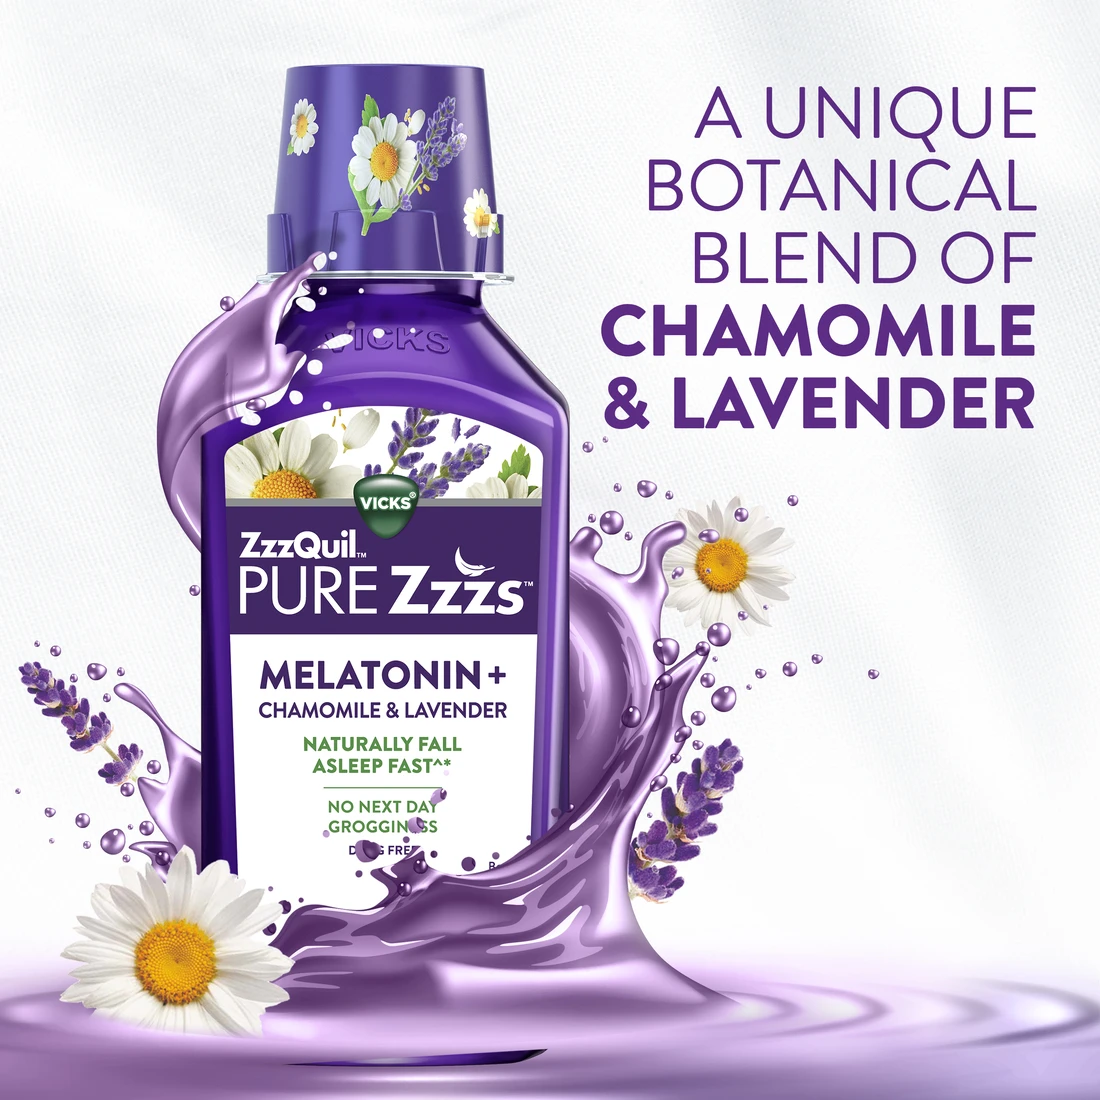 ZzzQuil PURE Zzzs Liquid Melatonin - carousel 3